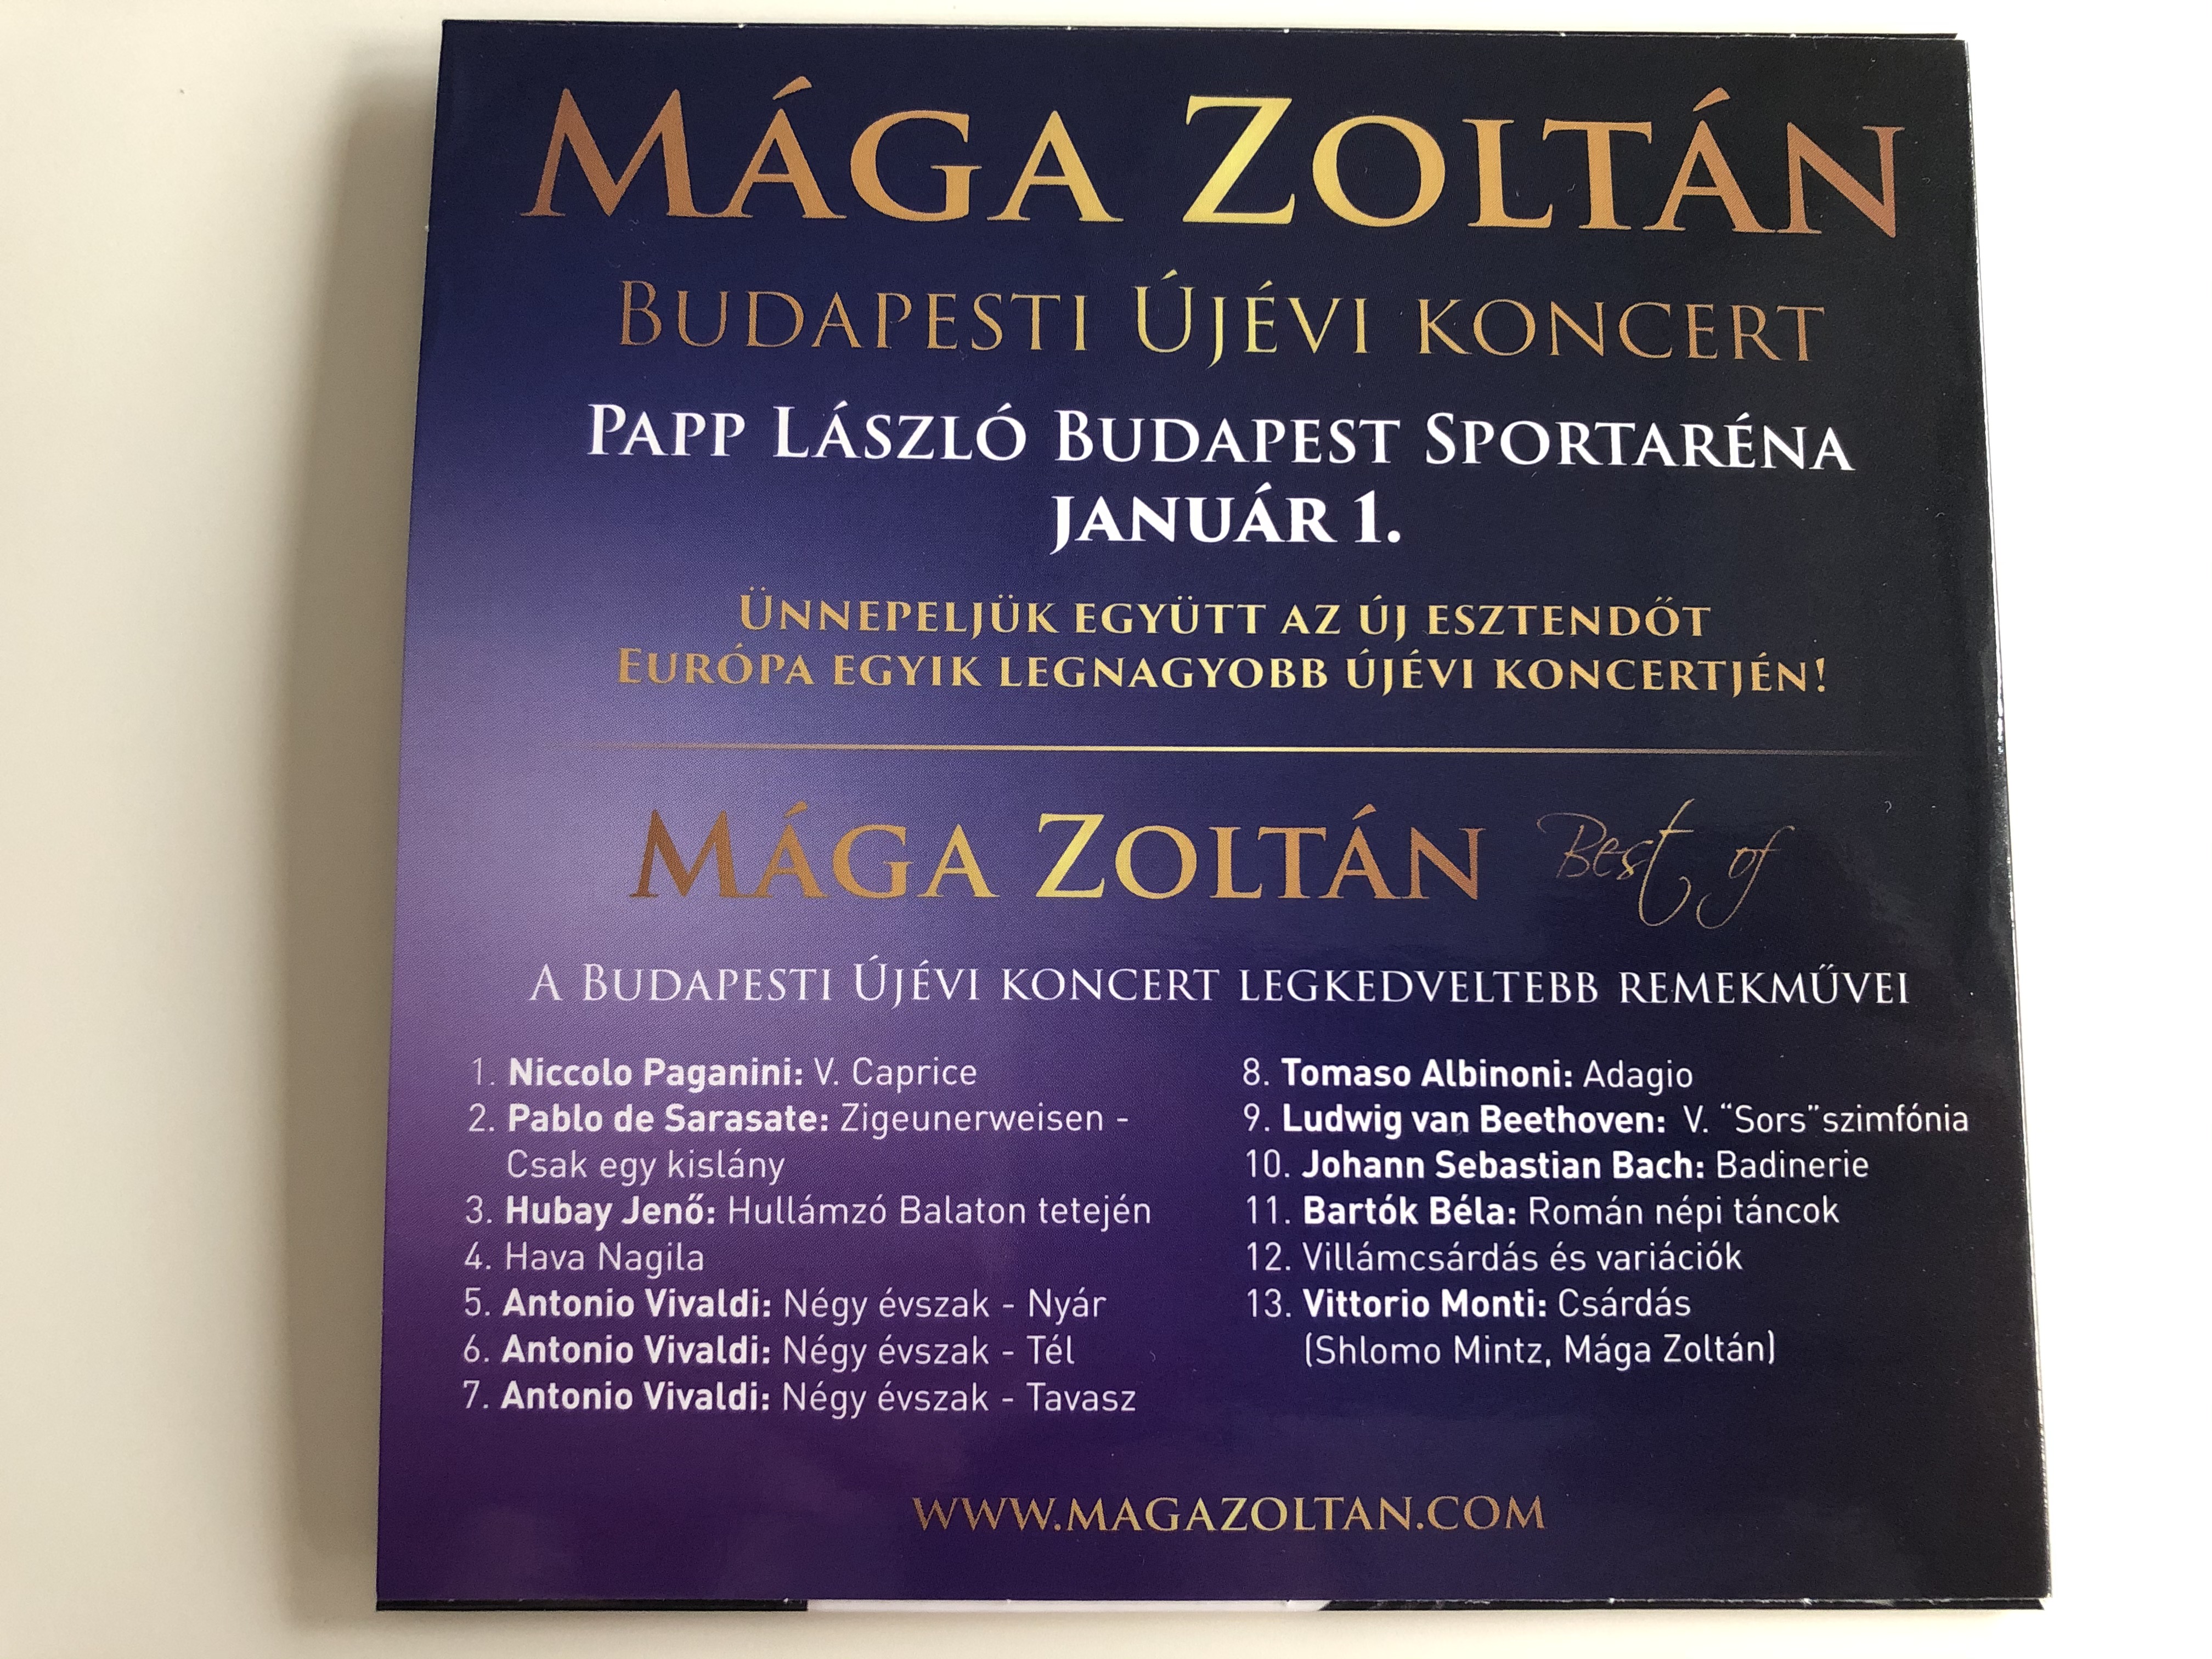 m-ga-zolt-n-best-of-budapesti-j-vi-koncert-2.jpg